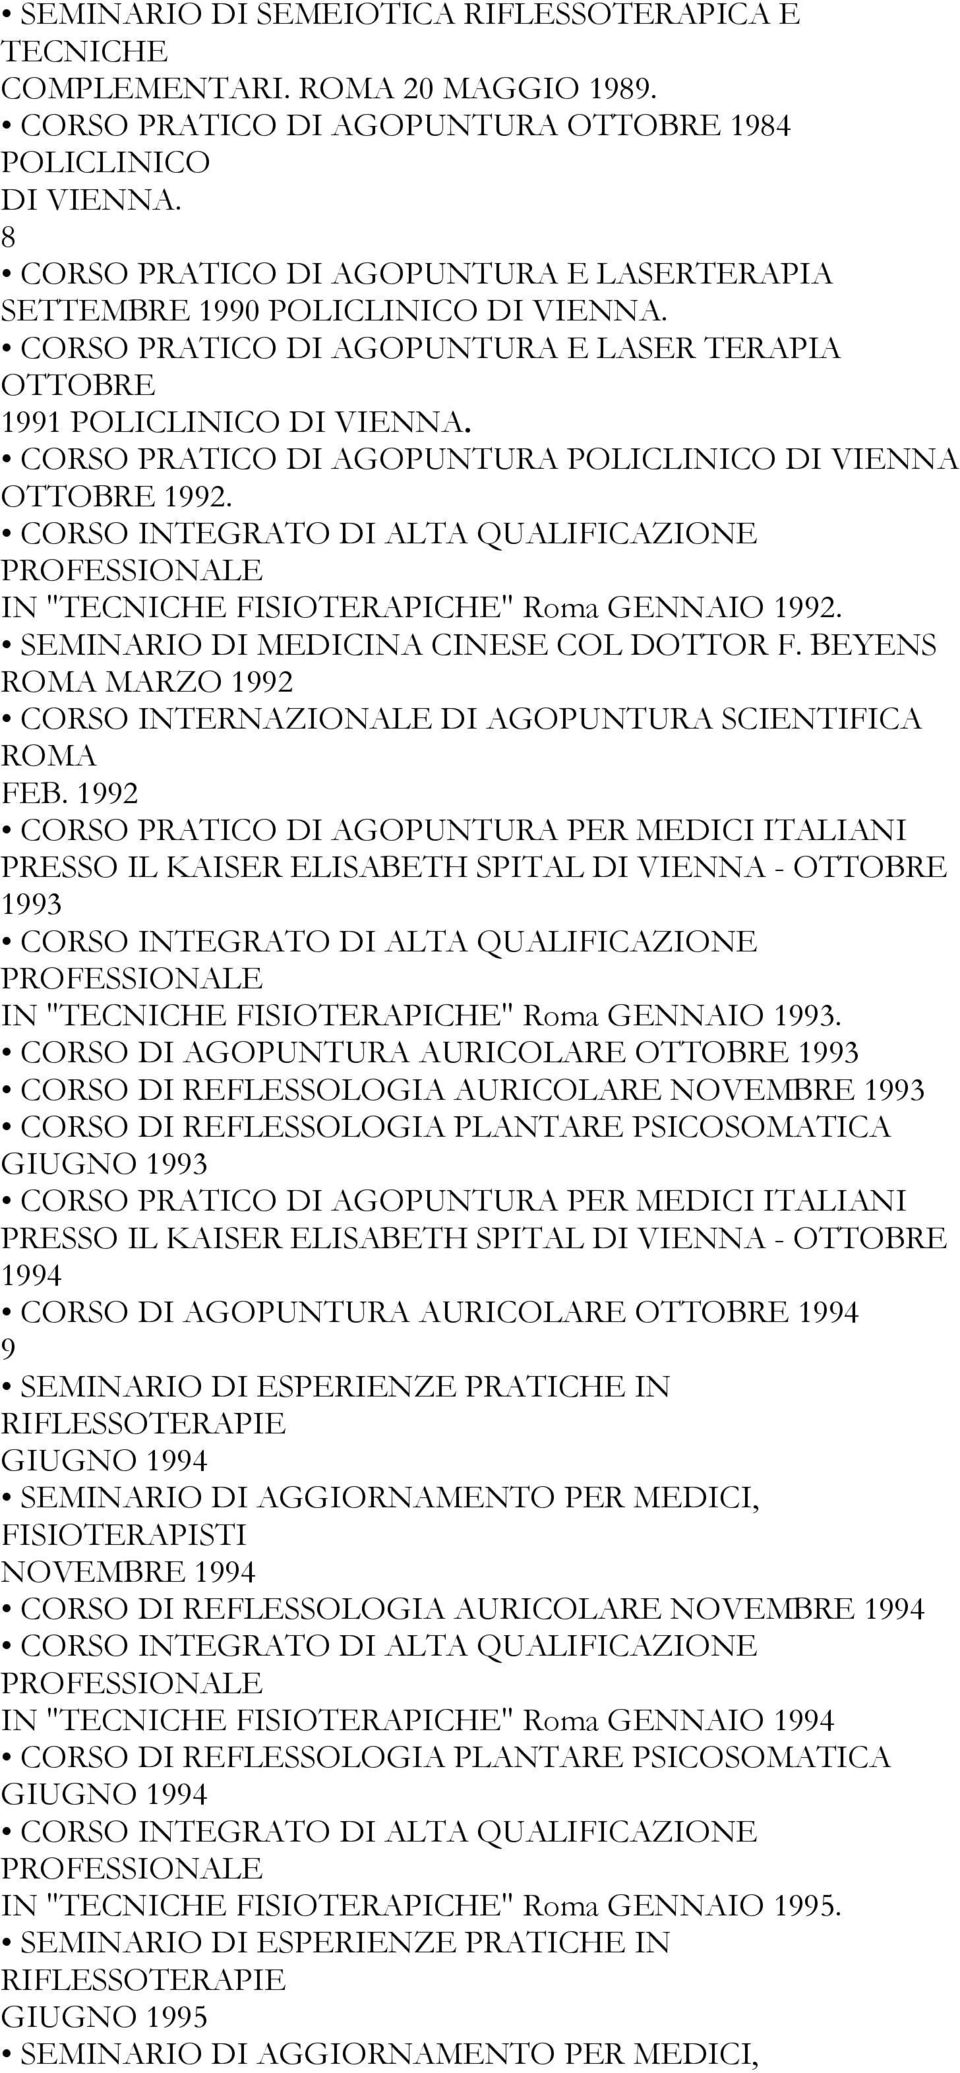 CORSO PRATICO DI AGOPUNTURA POLICLINICO DI VIENNA OTTOBRE 1992. CORSO INTEGRATO DI ALTA QUALIFICAZIONE PROFESSIONALE IN "TECNICHE FISIOTERAPICHE" Roma GENNAIO 1992.